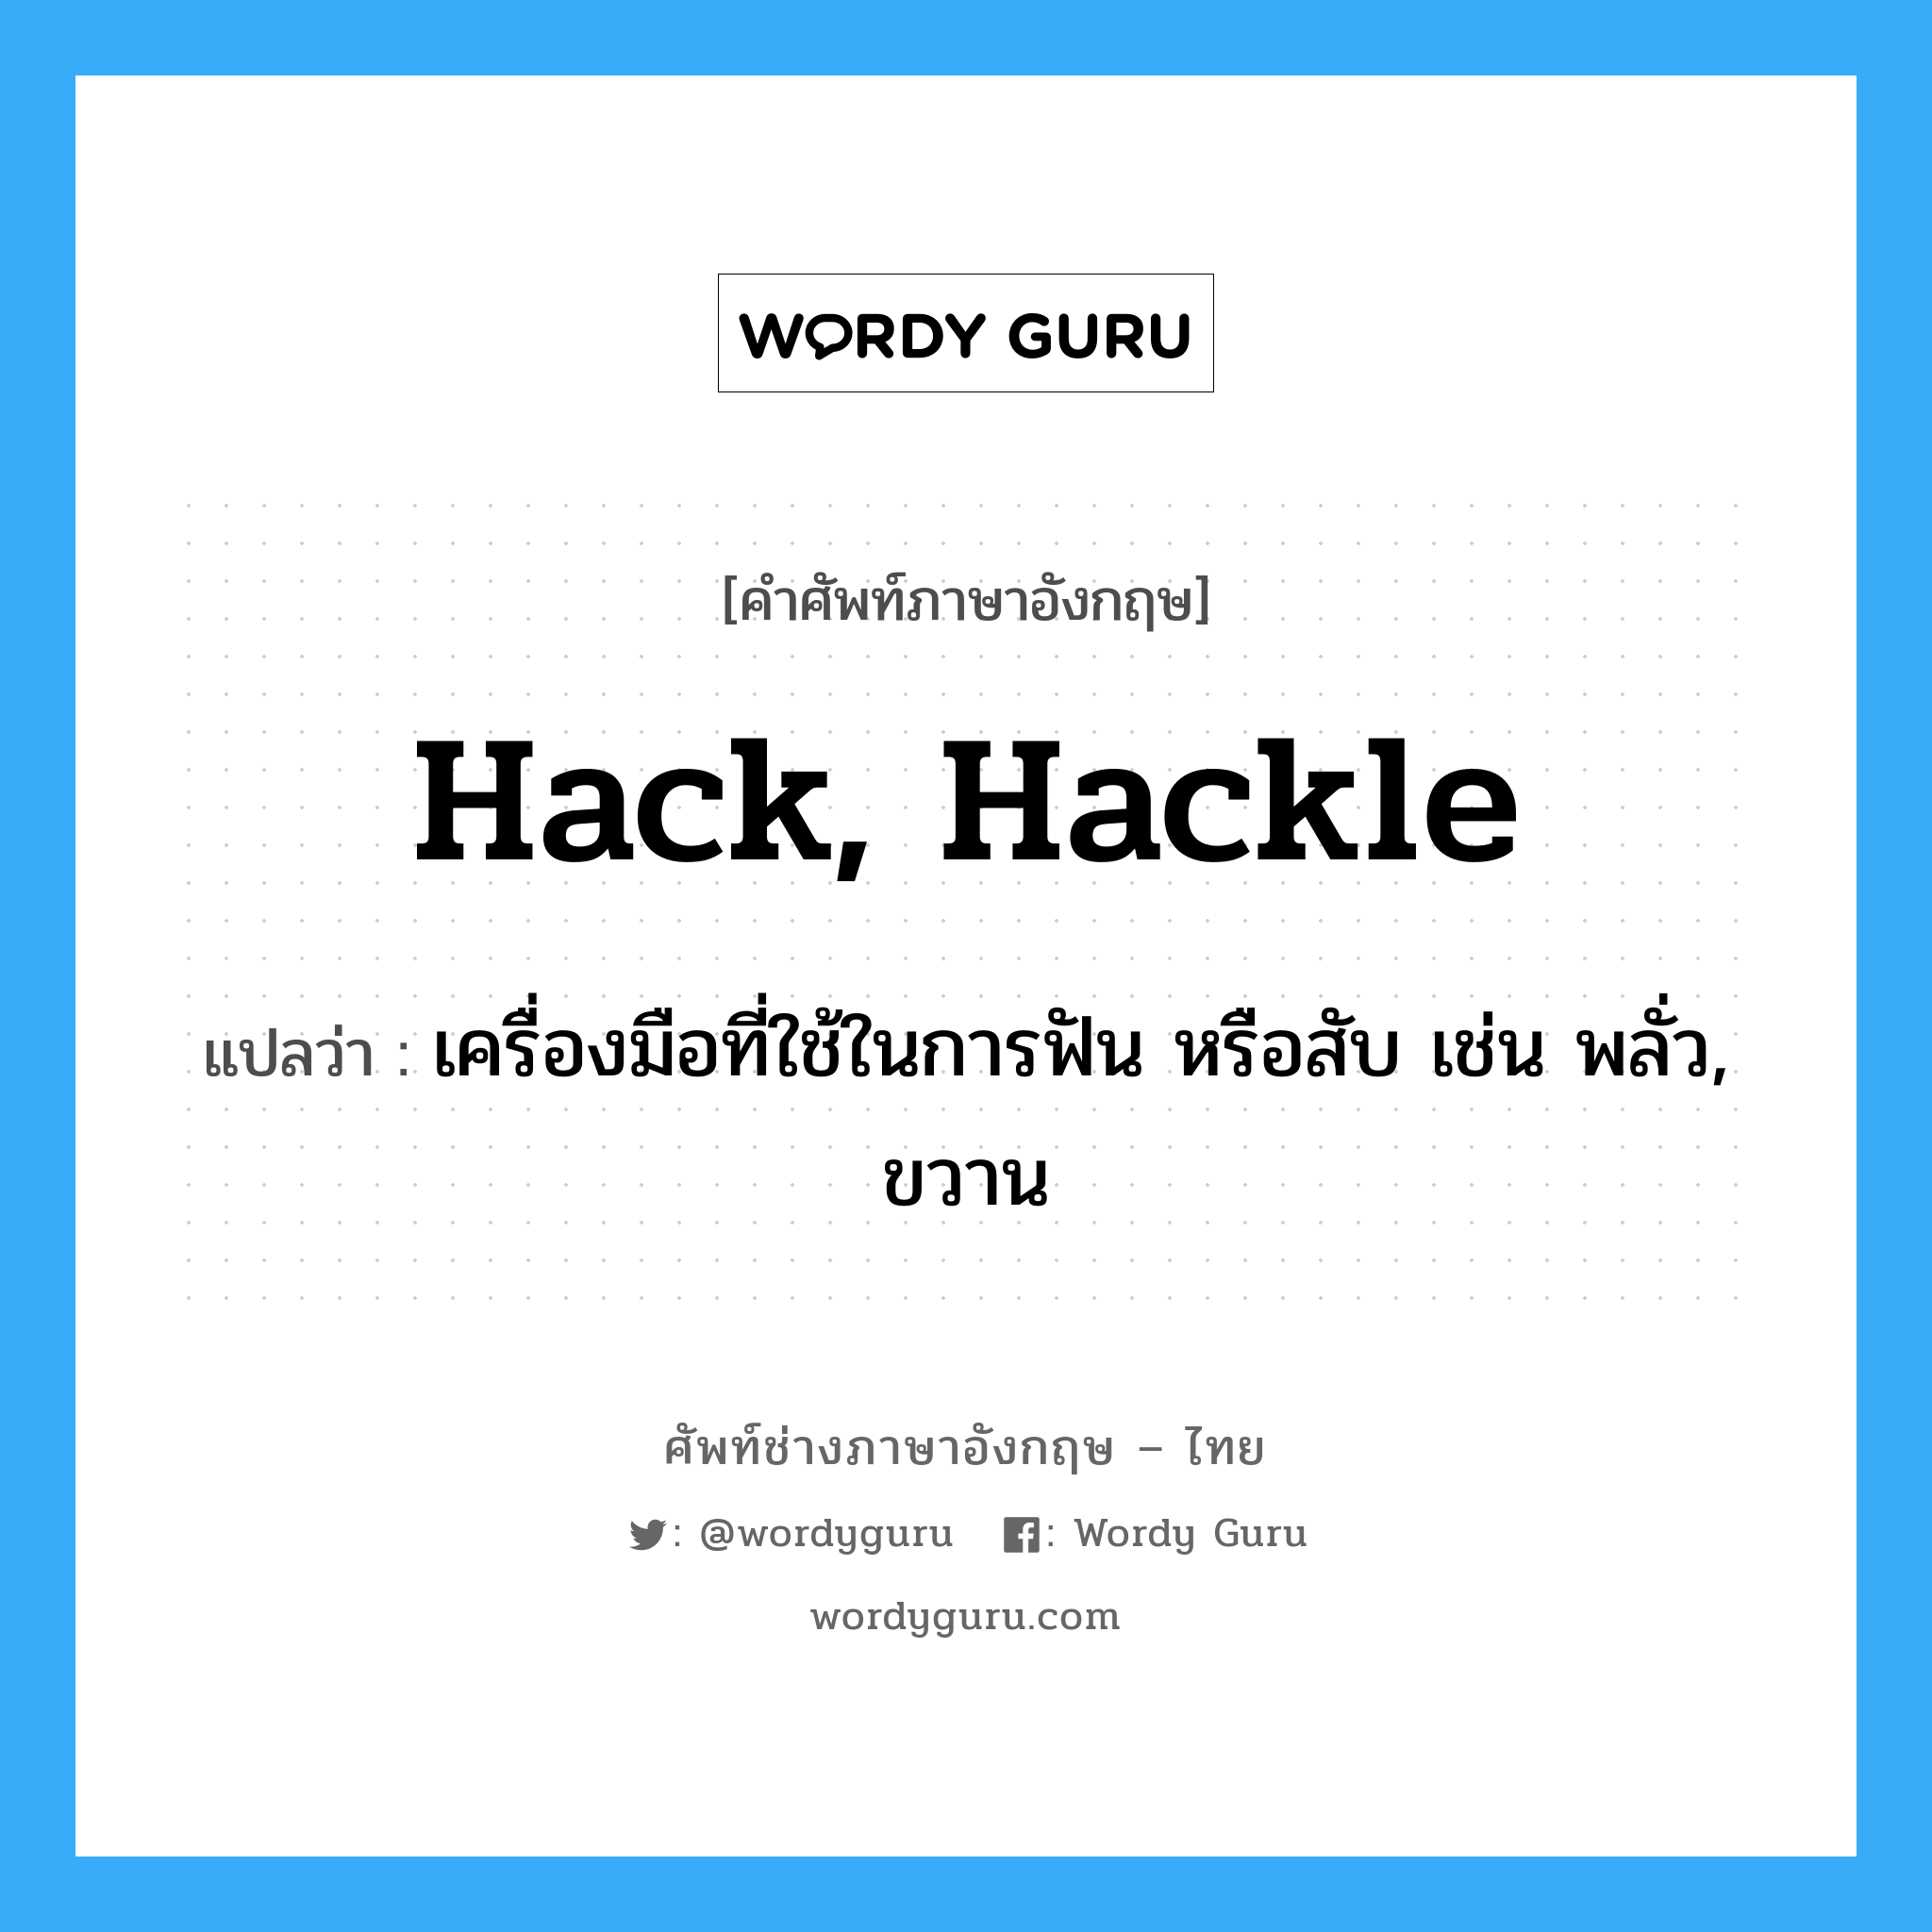 hack, hackle แปลว่า?, คำศัพท์ช่างภาษาอังกฤษ - ไทย hack, hackle คำศัพท์ภาษาอังกฤษ hack, hackle แปลว่า เครื่องมือที่ใช้ในการฟัน หรือสับ เช่น พลั่ว, ขวาน